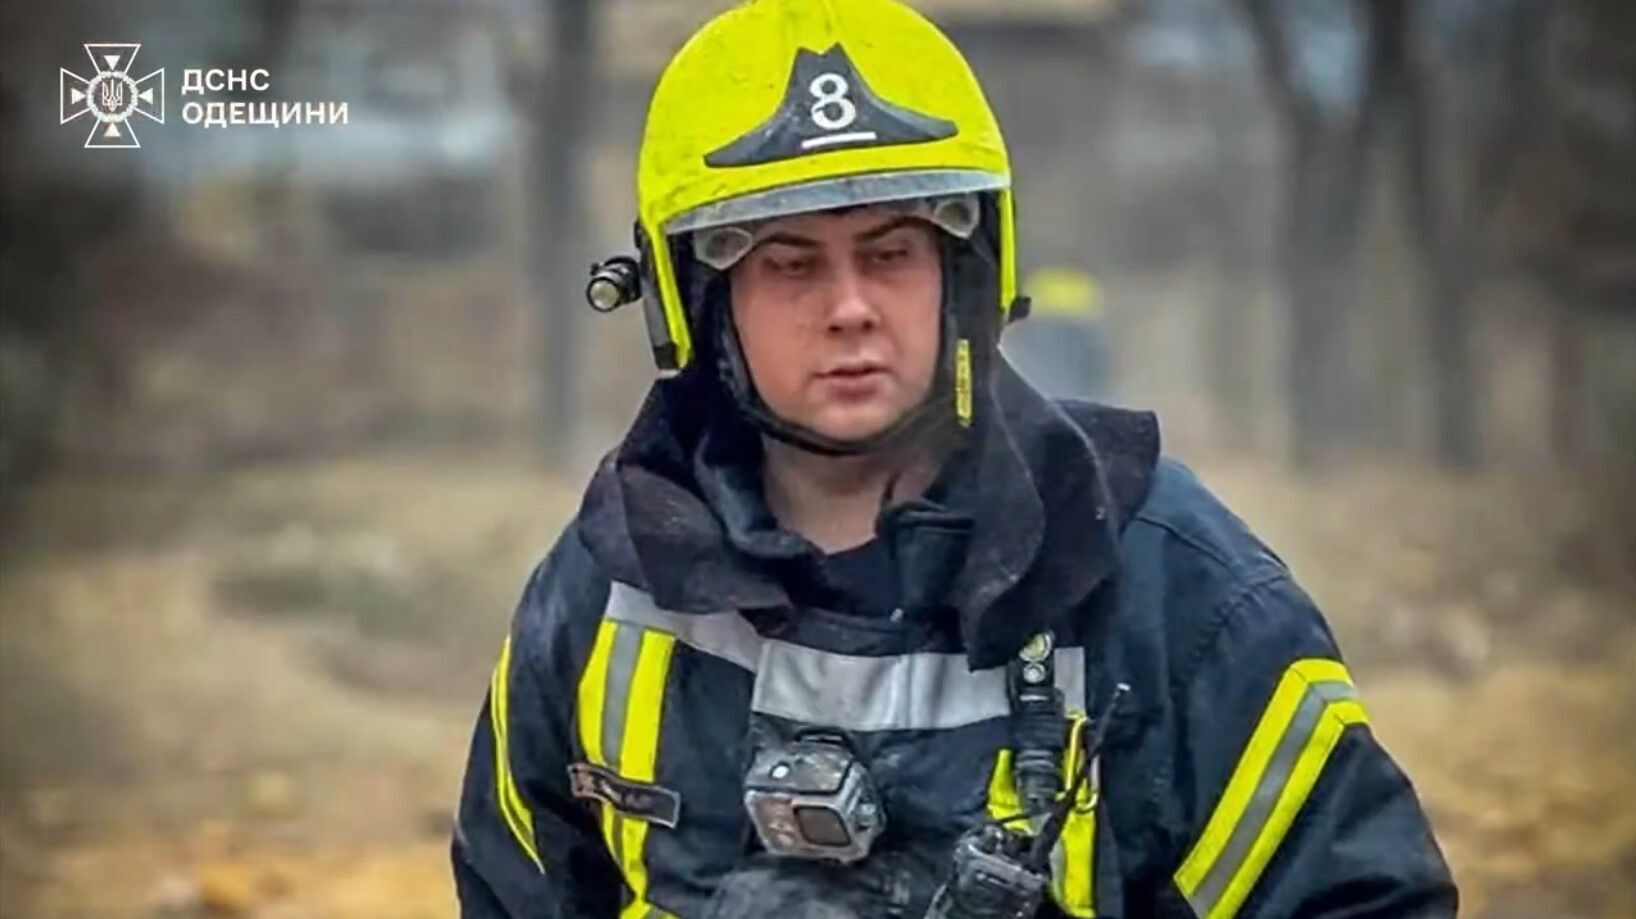 "Працював командиром відділення": під час ліквідації пожежі в центрі Одеси загинув рятувальник Антон Халіков. Фото